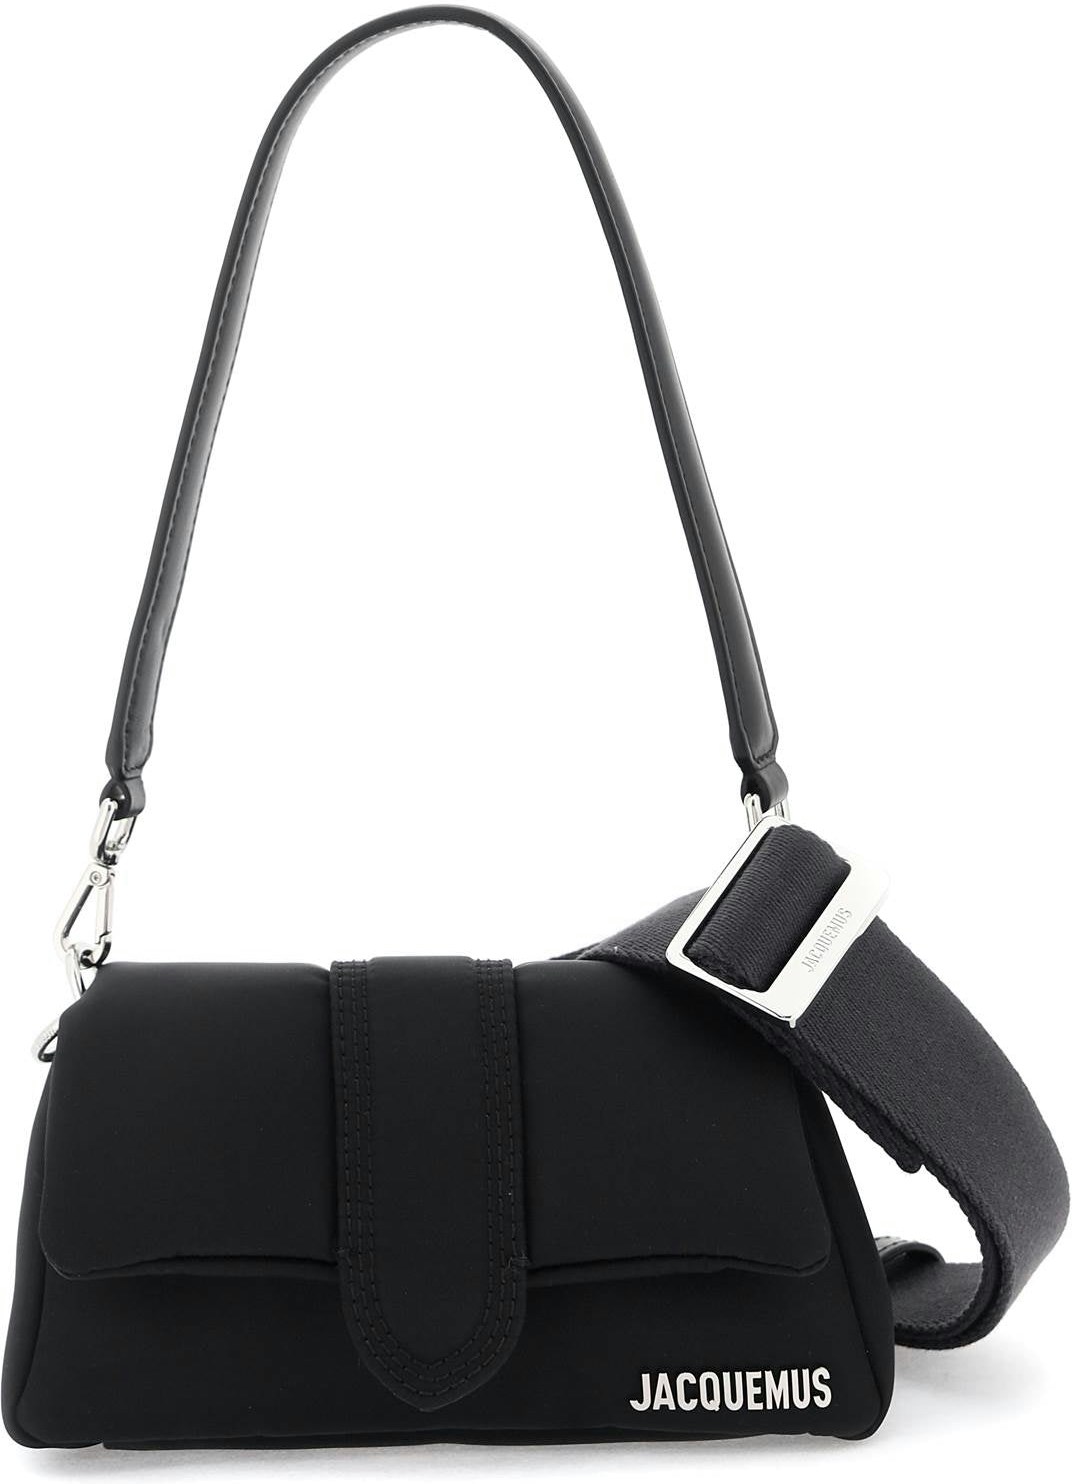 Christian Dior Leather-Trimmed Nylon Saddle Bag - Black Shoulder